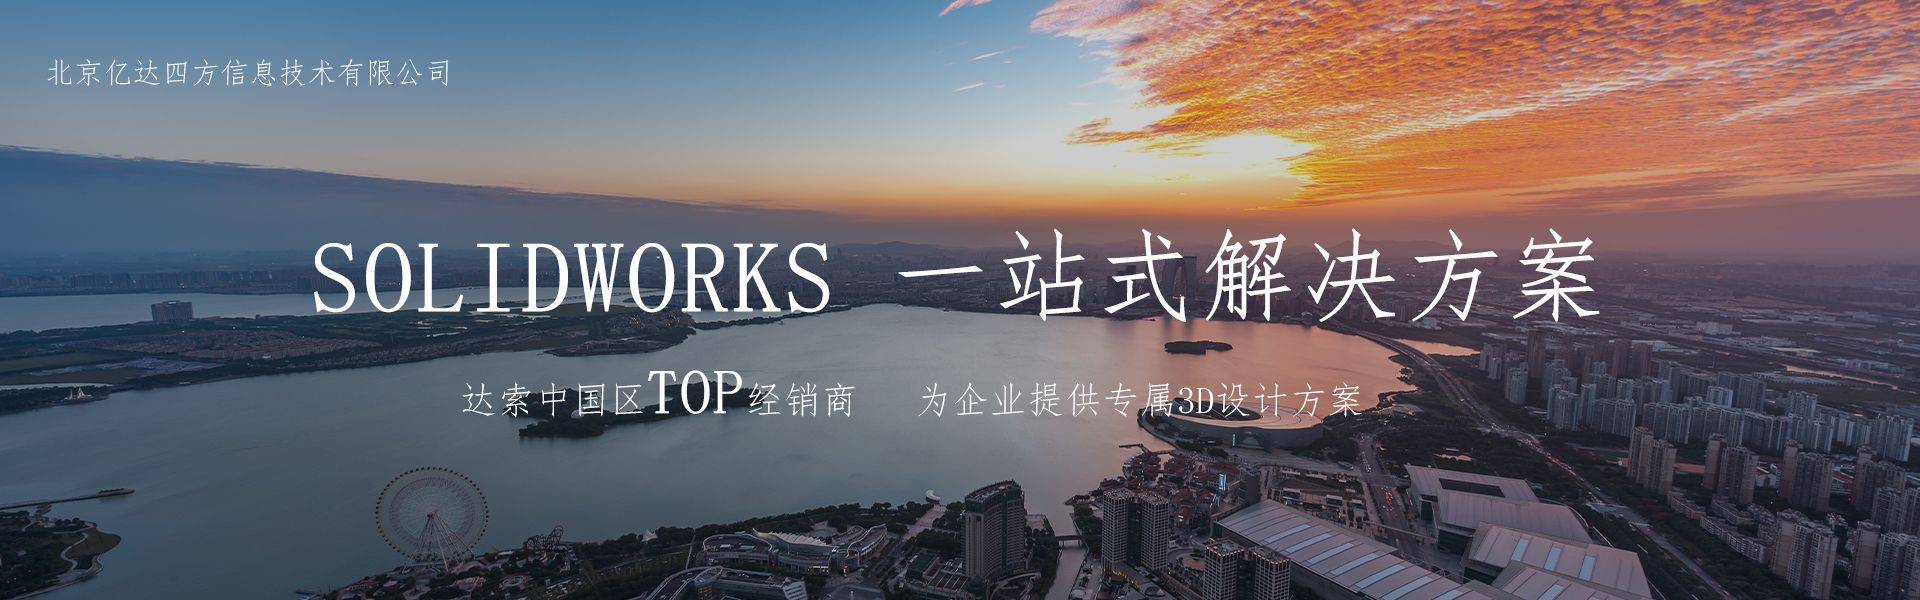 正版皇冠信用网代理_SolidWorks北京正版代理商亿达四方：官方授权SolidWorks中国代理